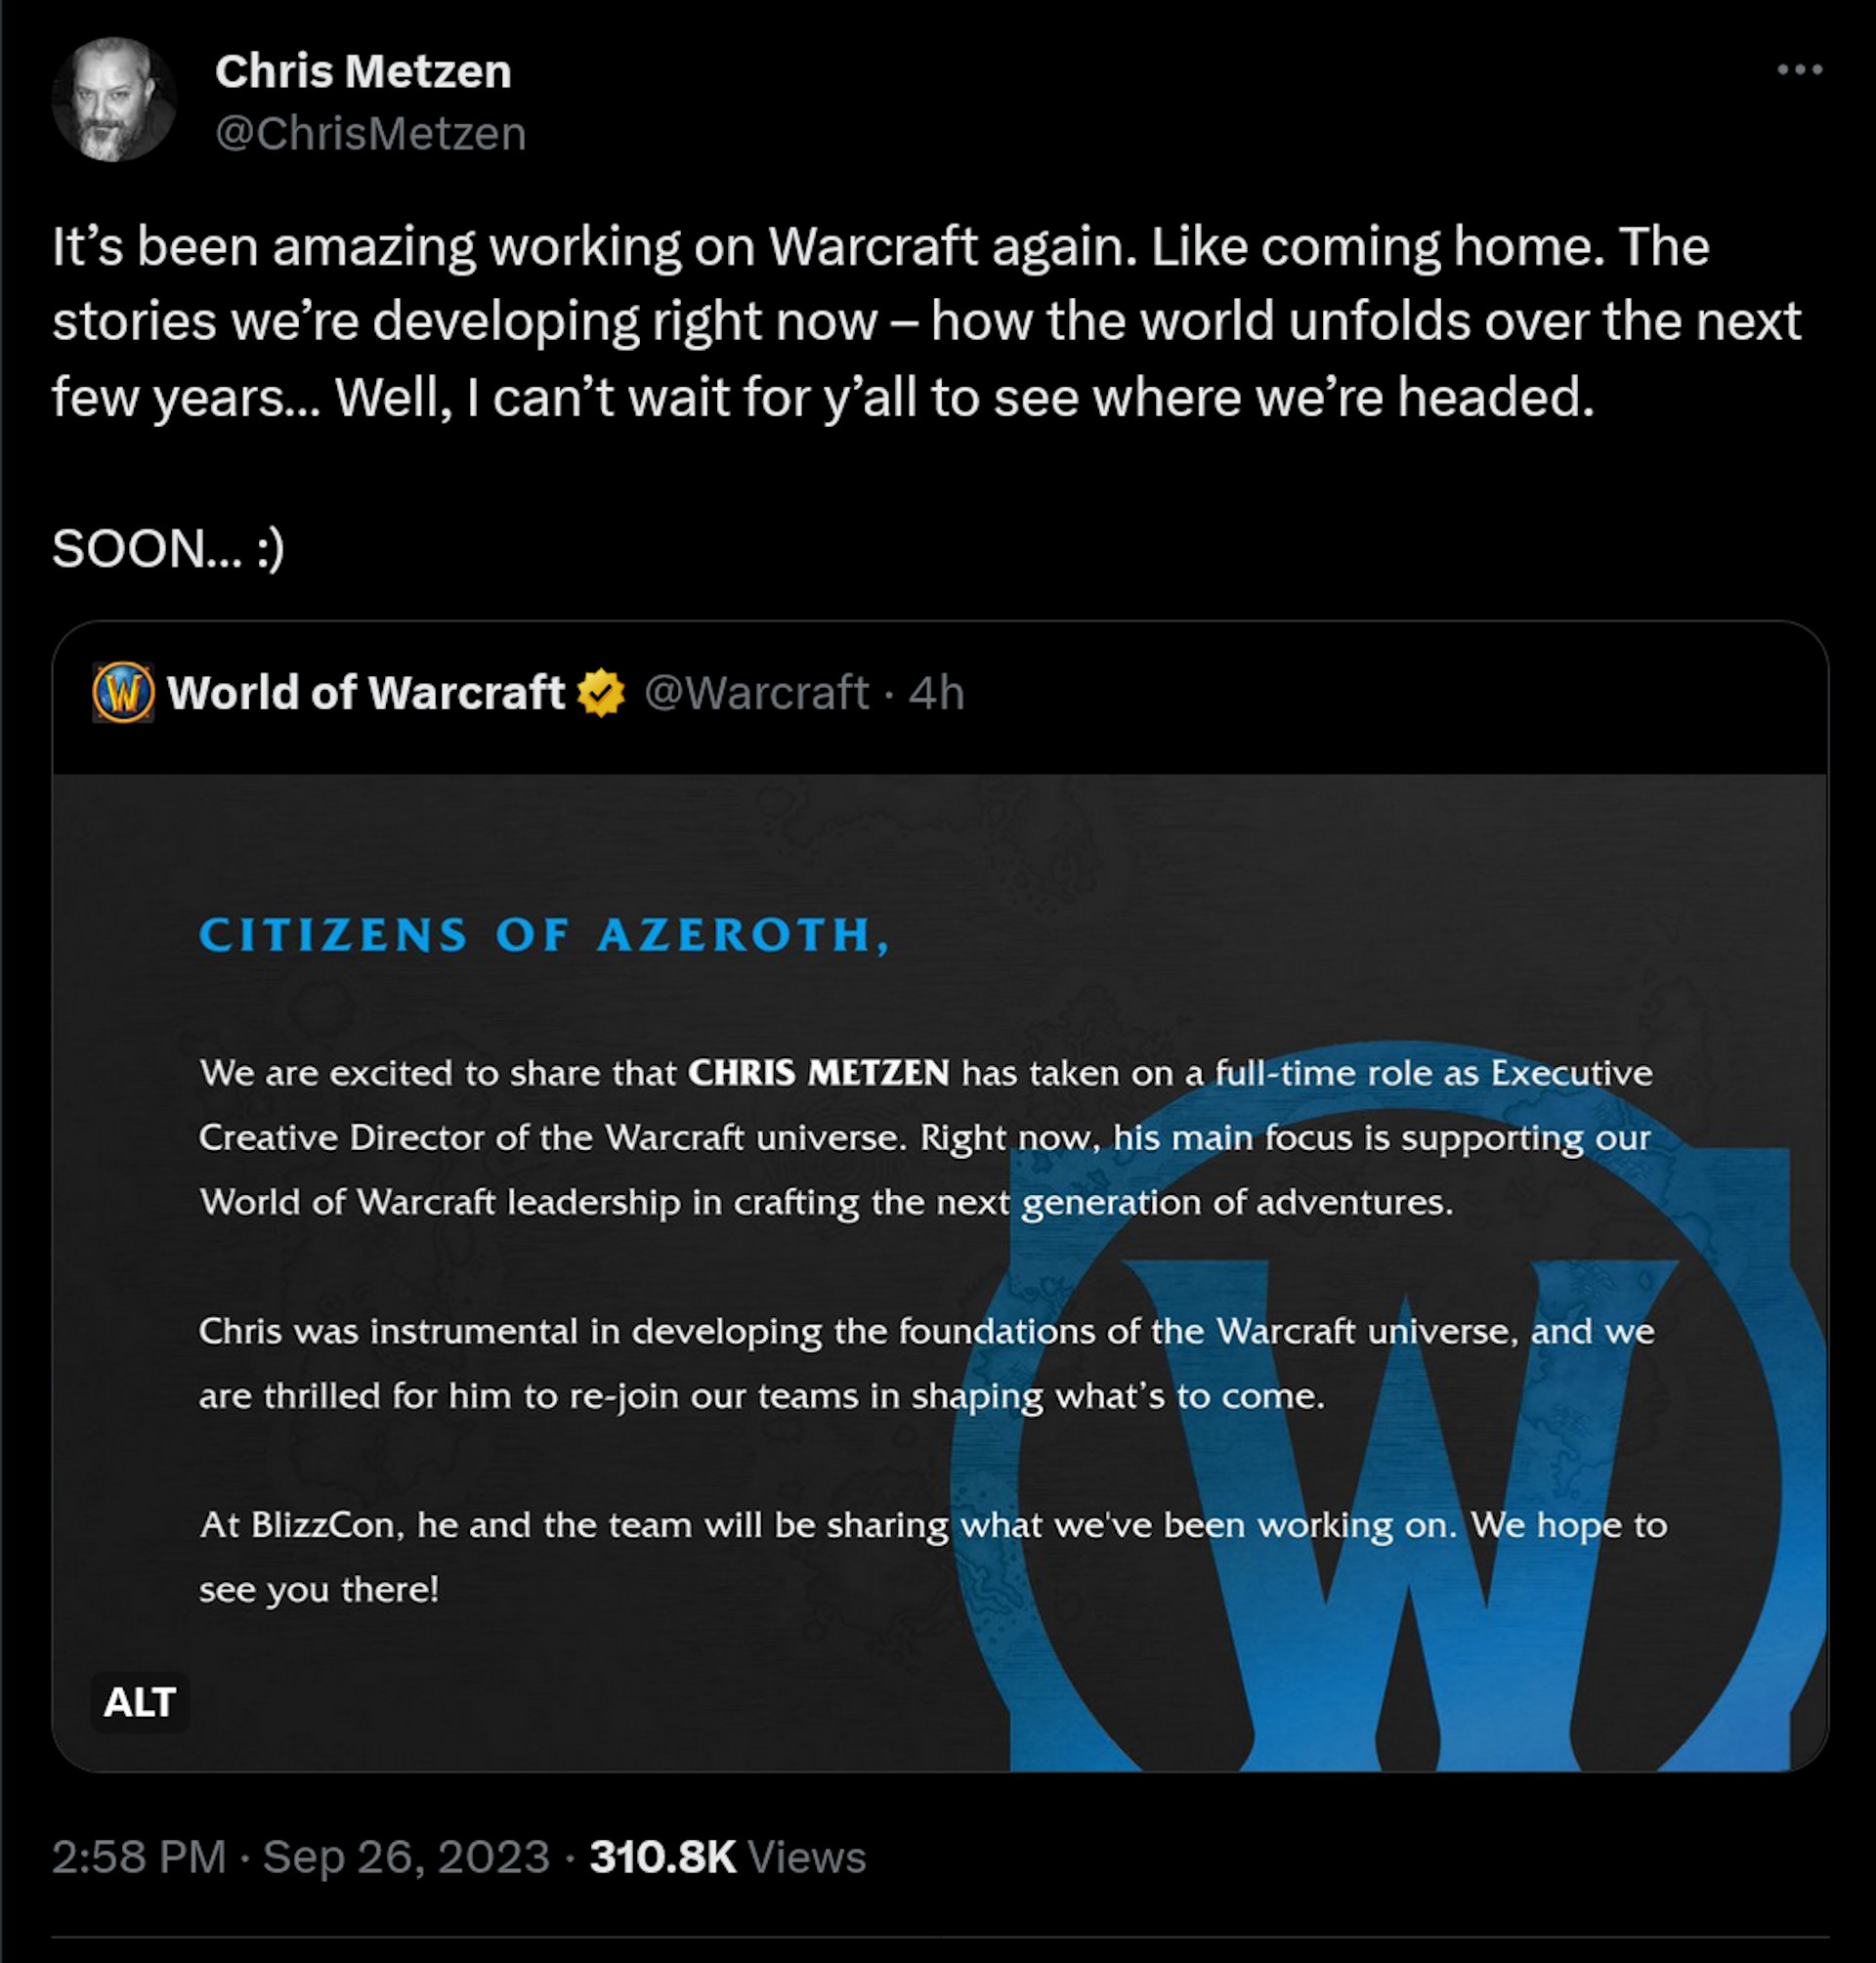 Ha sido fantástico volver a trabajar en Warcraft.  Como volver a casa.  Las historias que estamos desarrollando ahora mismo: cómo se desarrollará el mundo en los próximos años... Bueno, no puedo esperar a que todos vean hacia dónde nos dirigimos.  PRONTO… :)